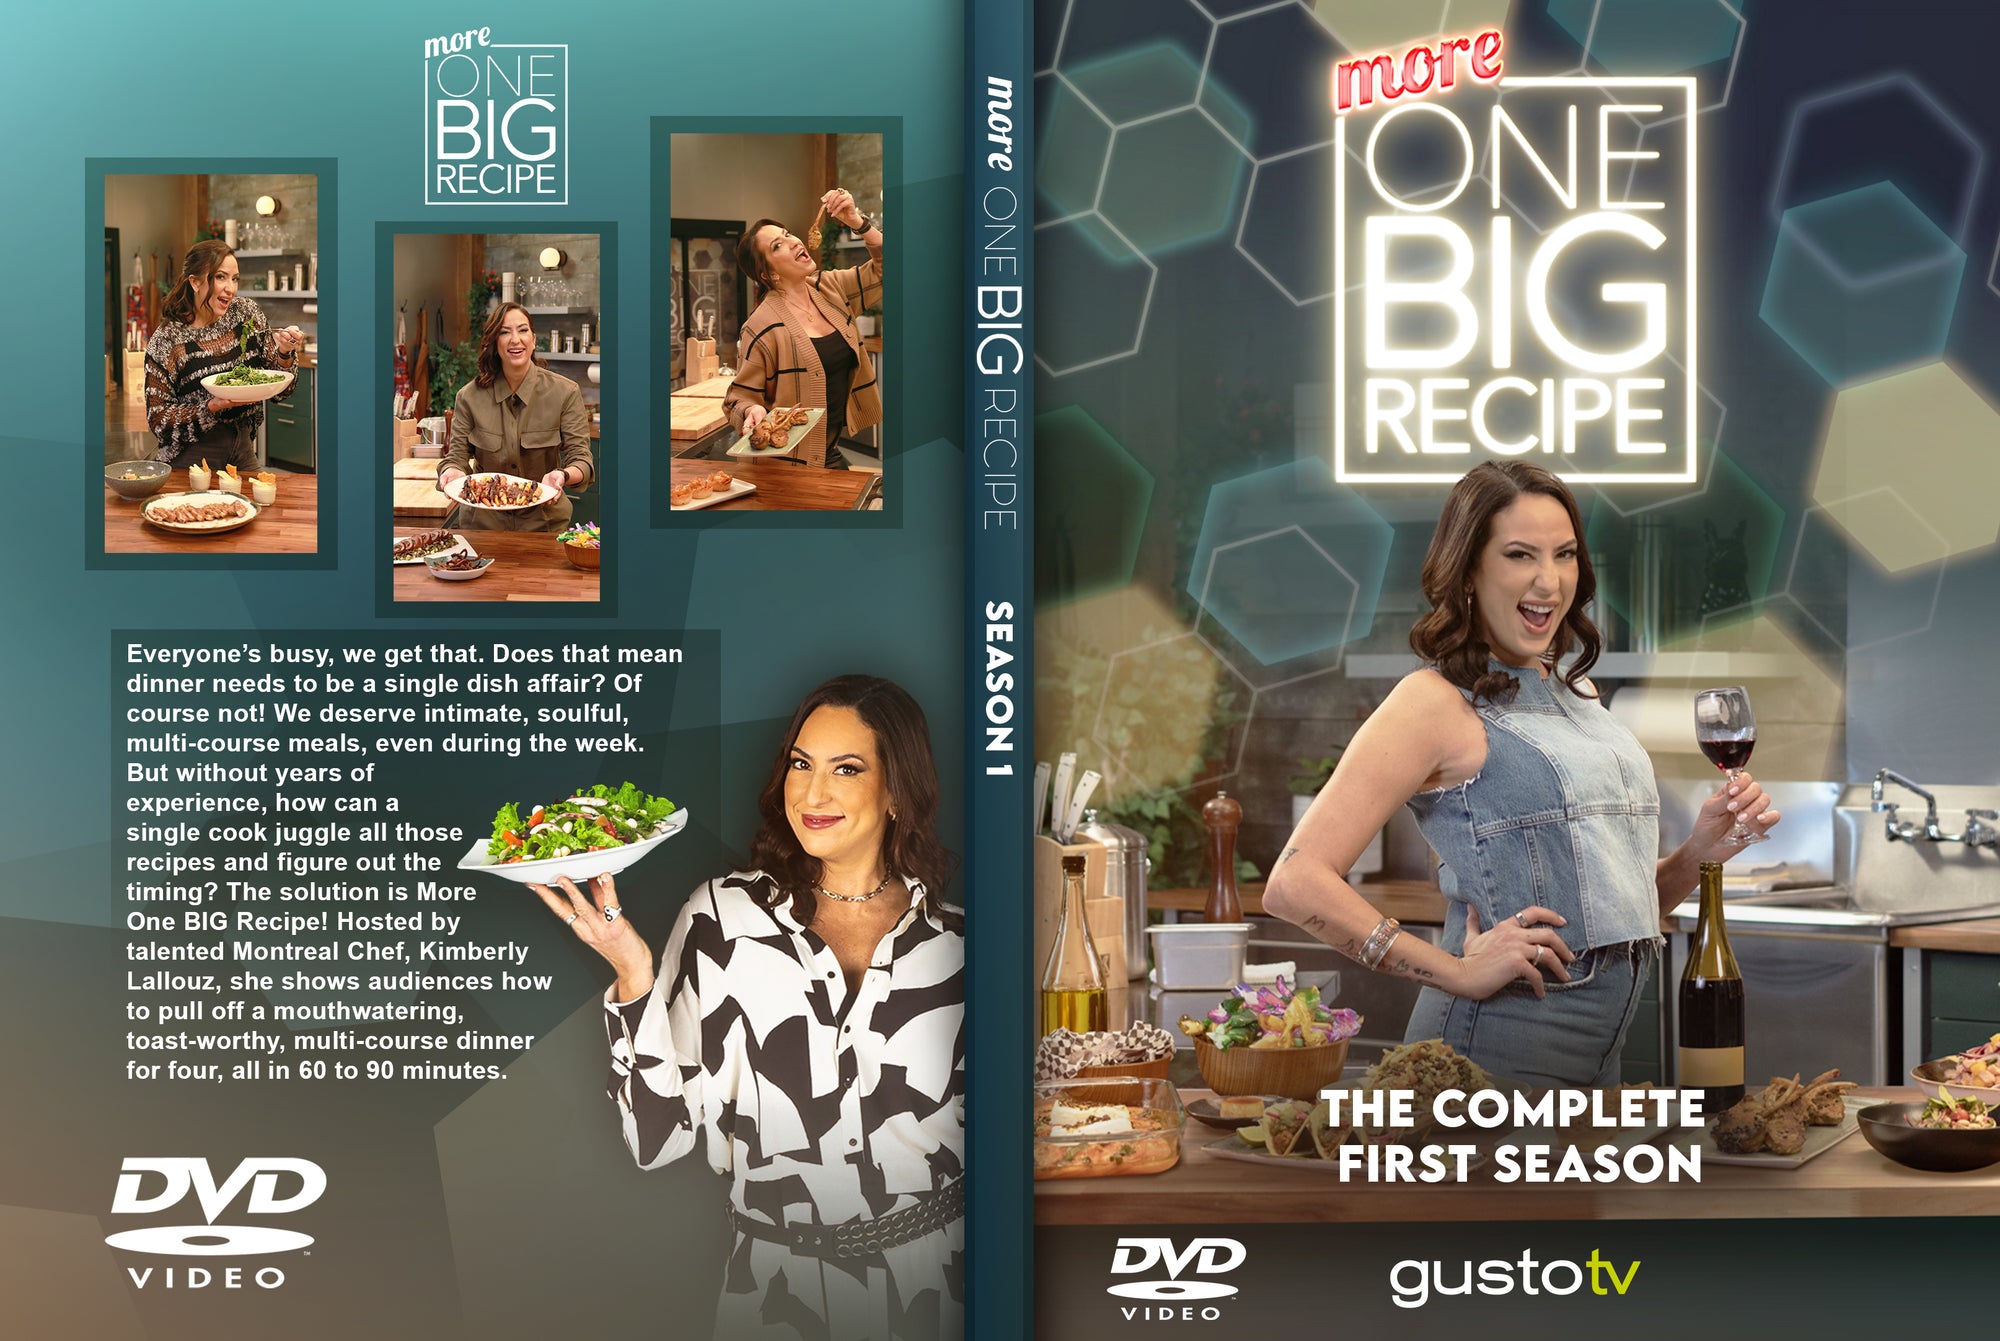 More One BIG Recipe DVD